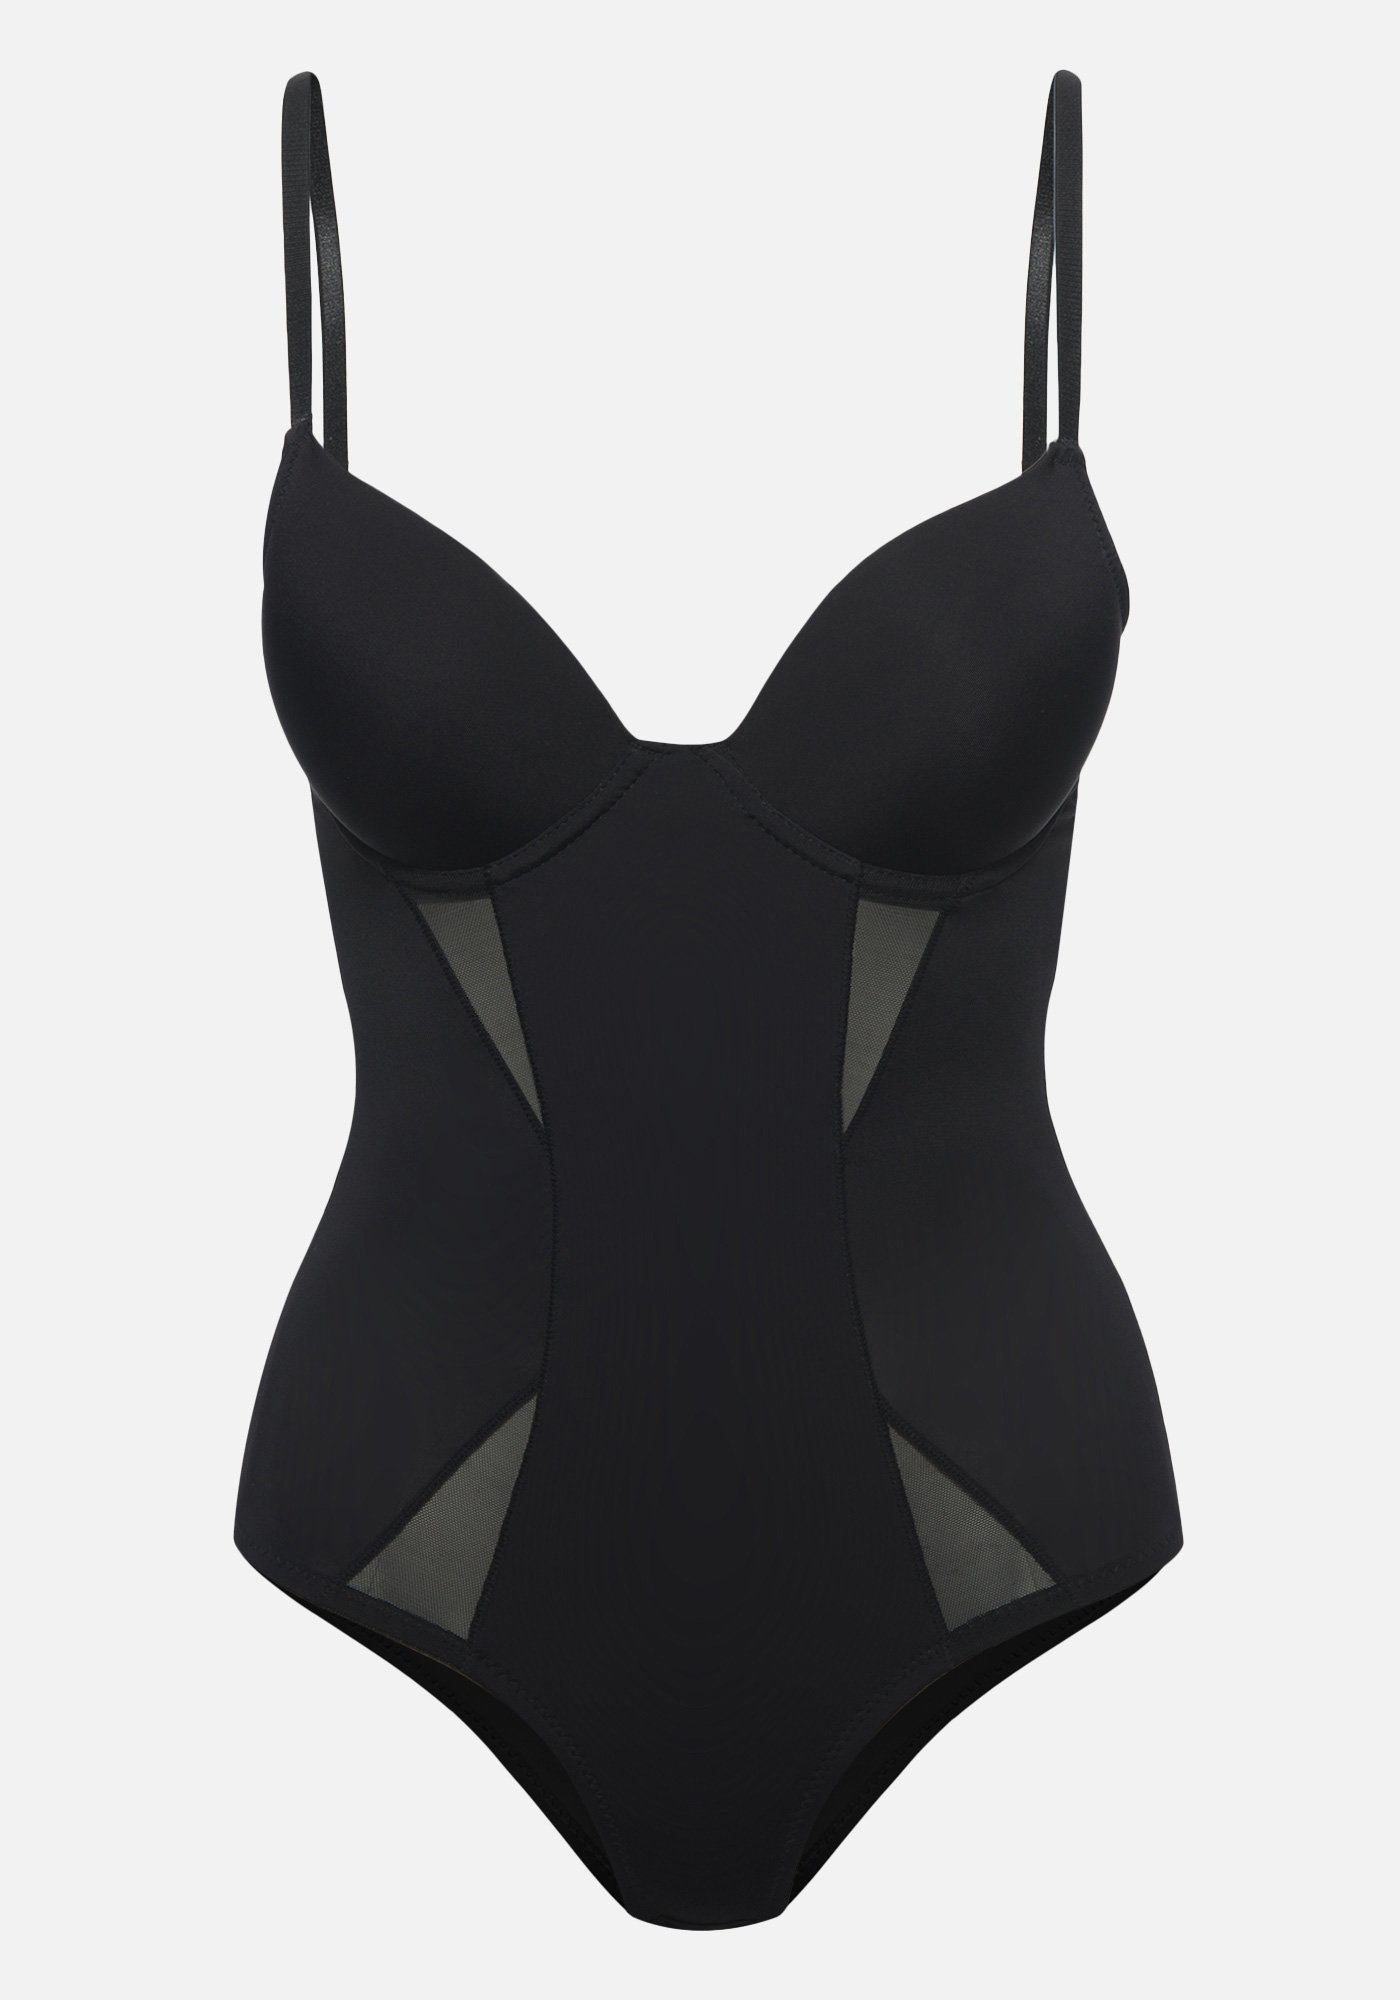 Bebe Women's Bodysuit Shapewear, Size 34D in Black Spandex/Nylon